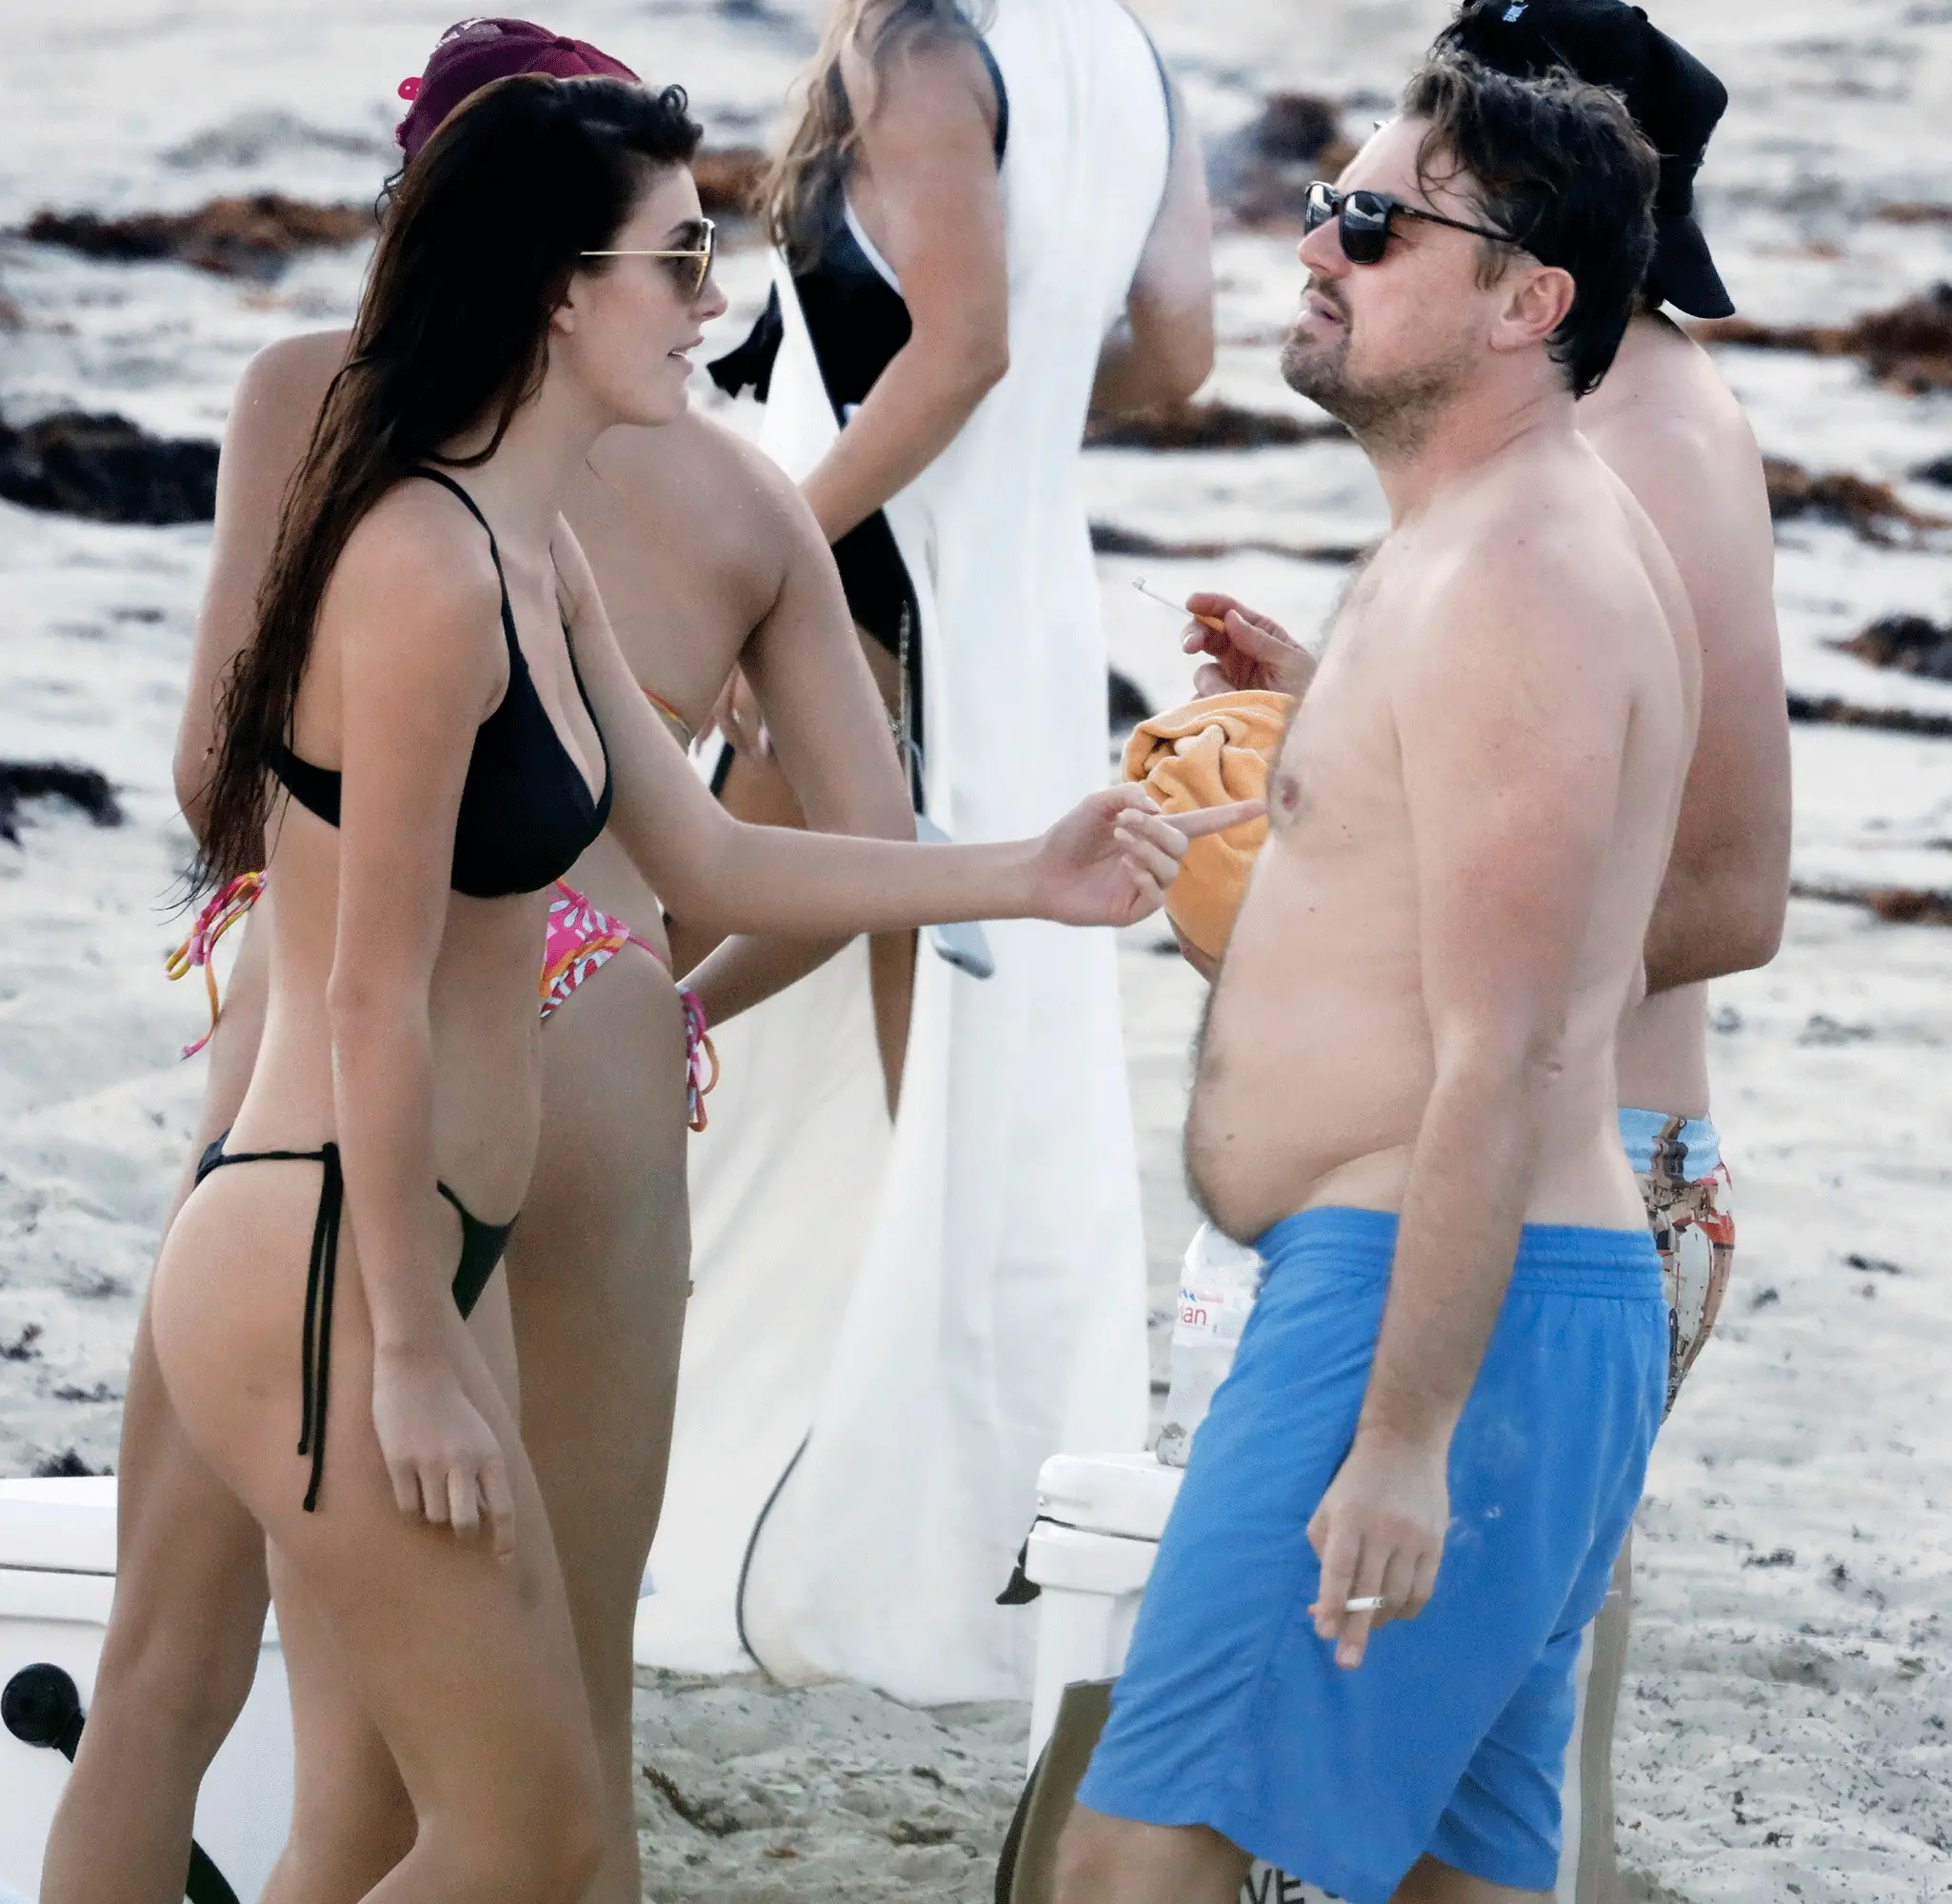 Leonardo DiCaprio continúa sus románticas vacaciones con Camila Morrone